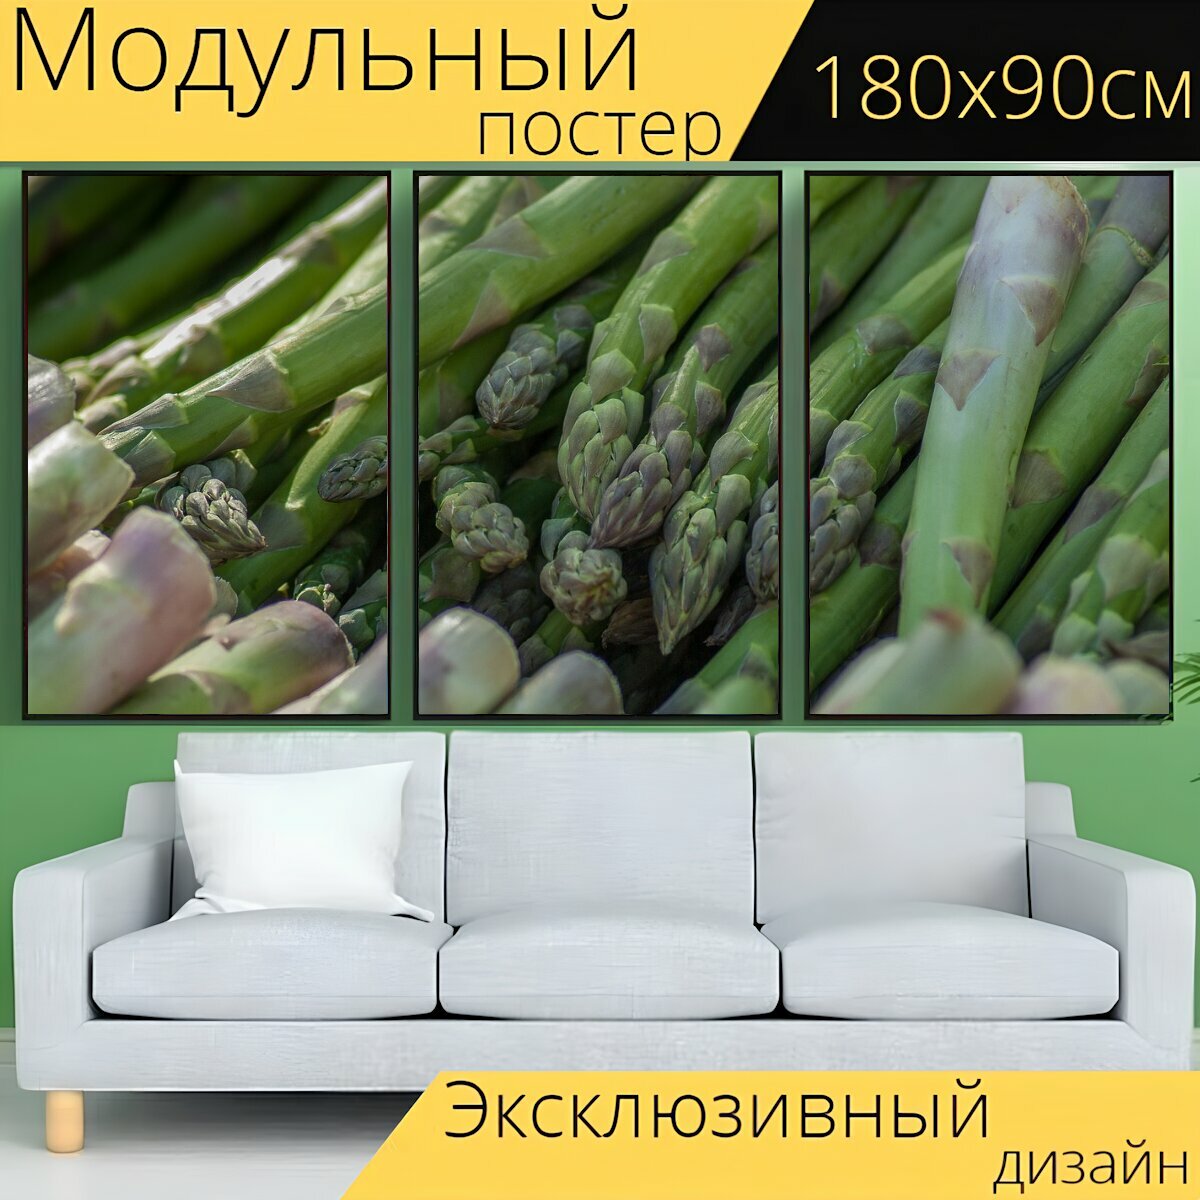 Модульный постер "Спаржа, овощ, рынок" 180 x 90 см. для интерьера